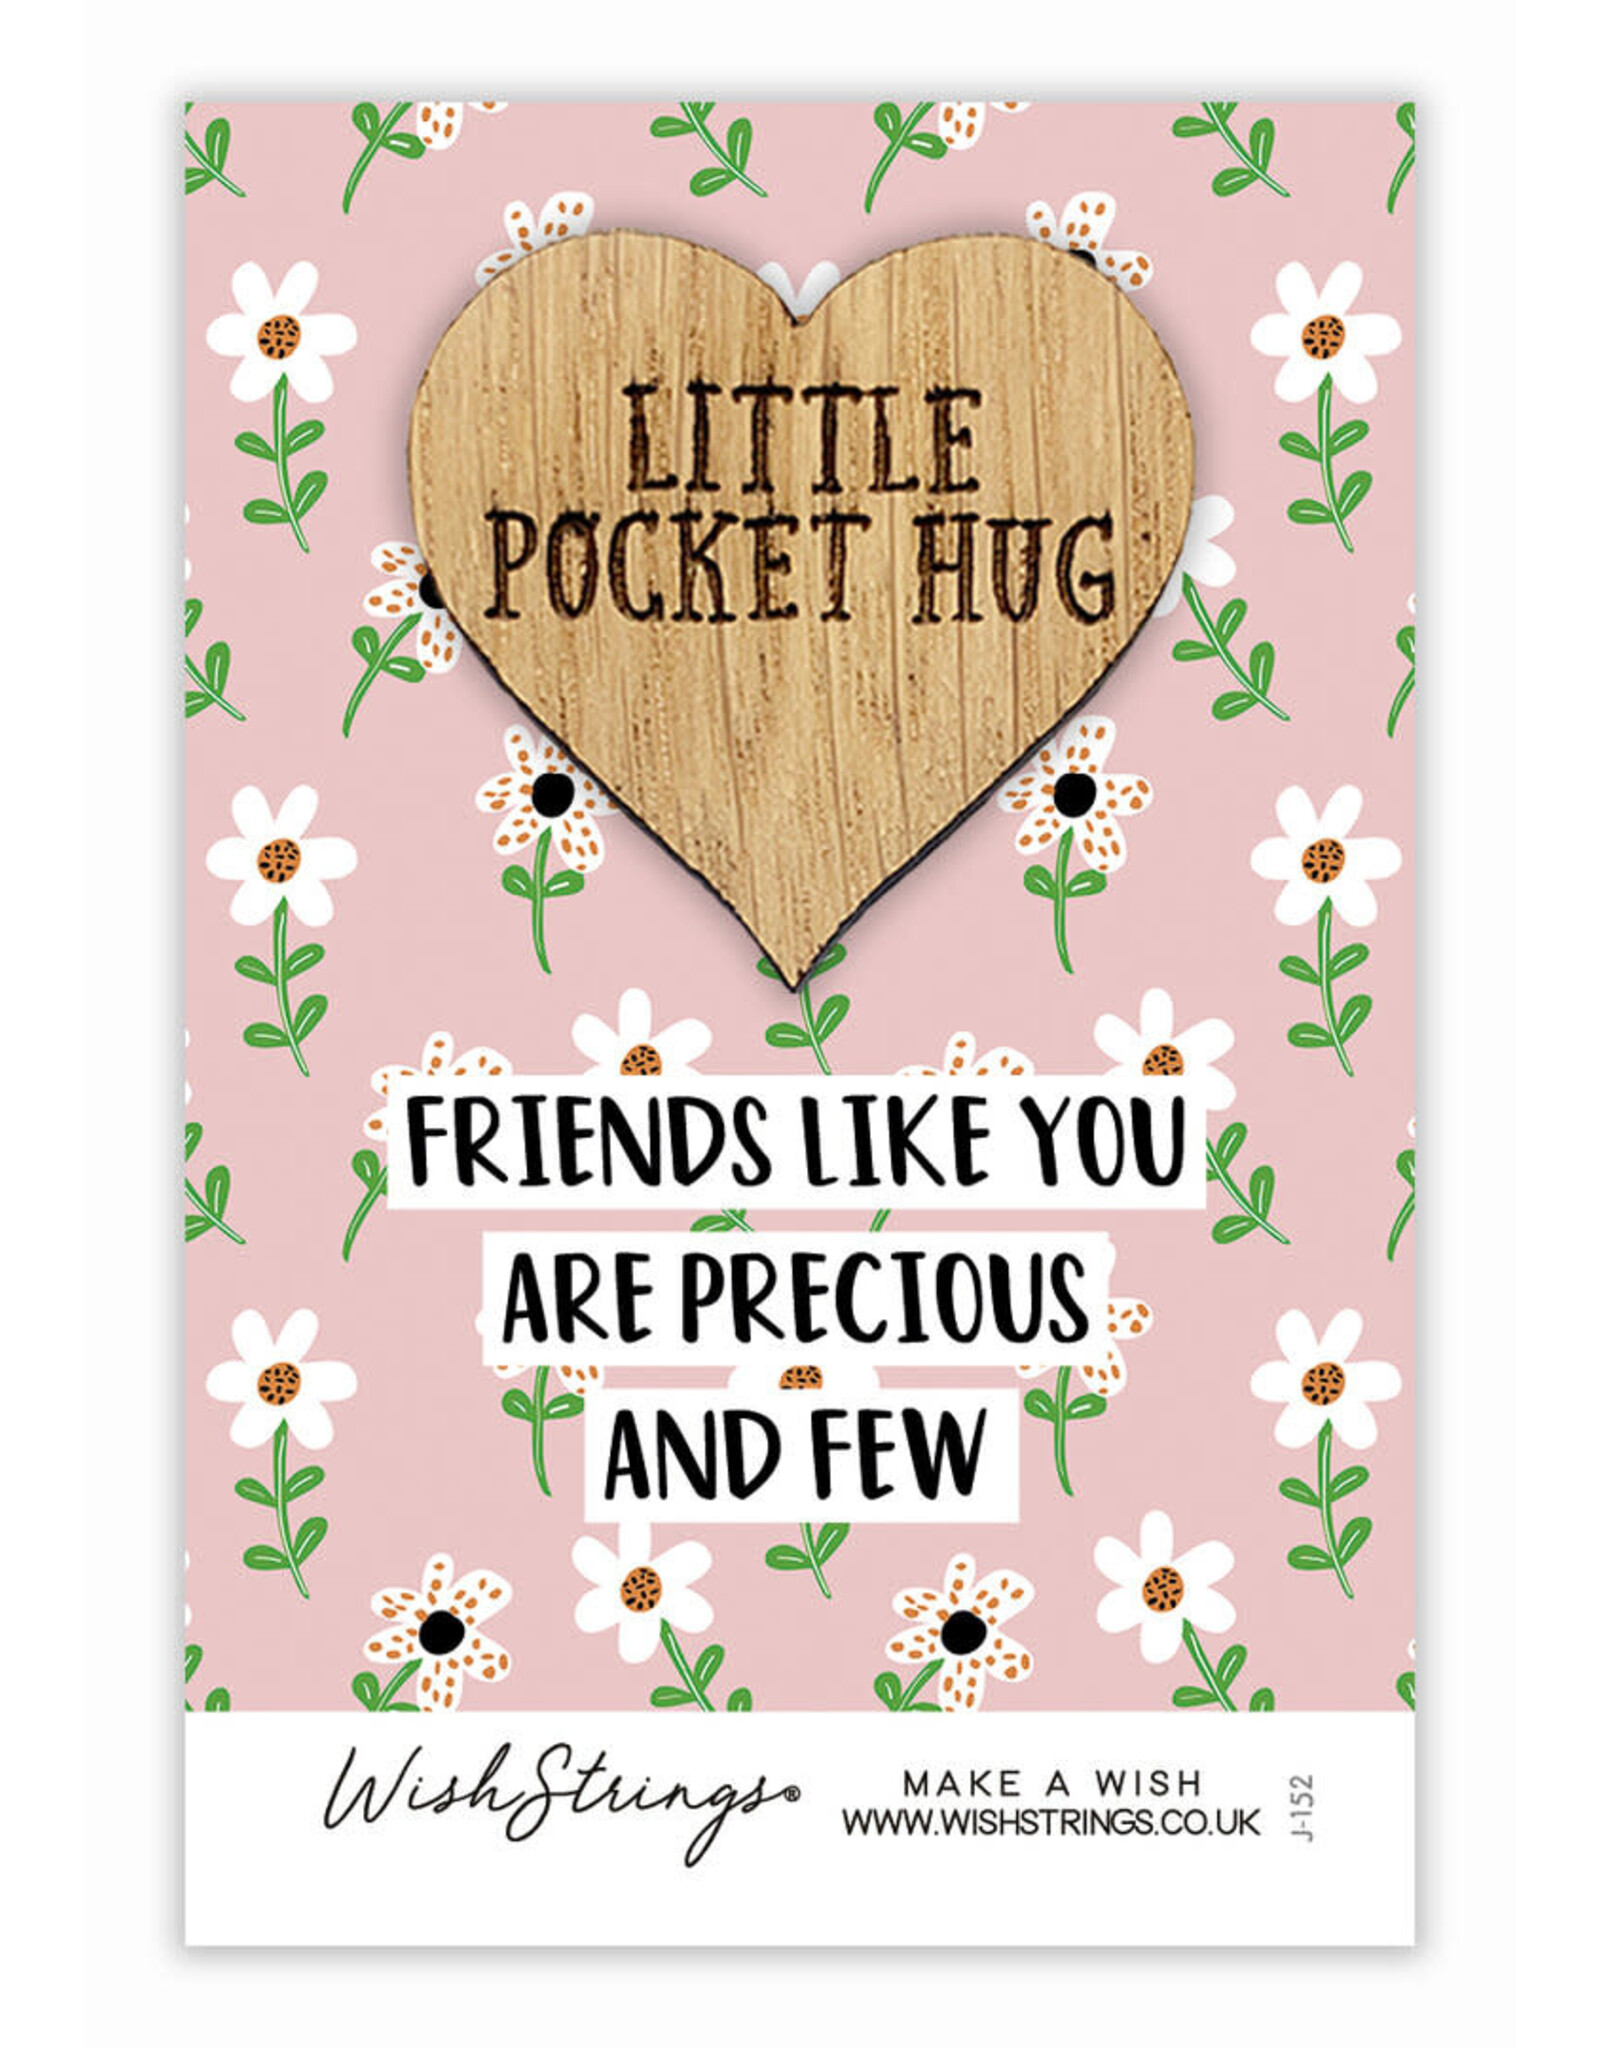 Little Pocket Hug “Friends like you are precious”